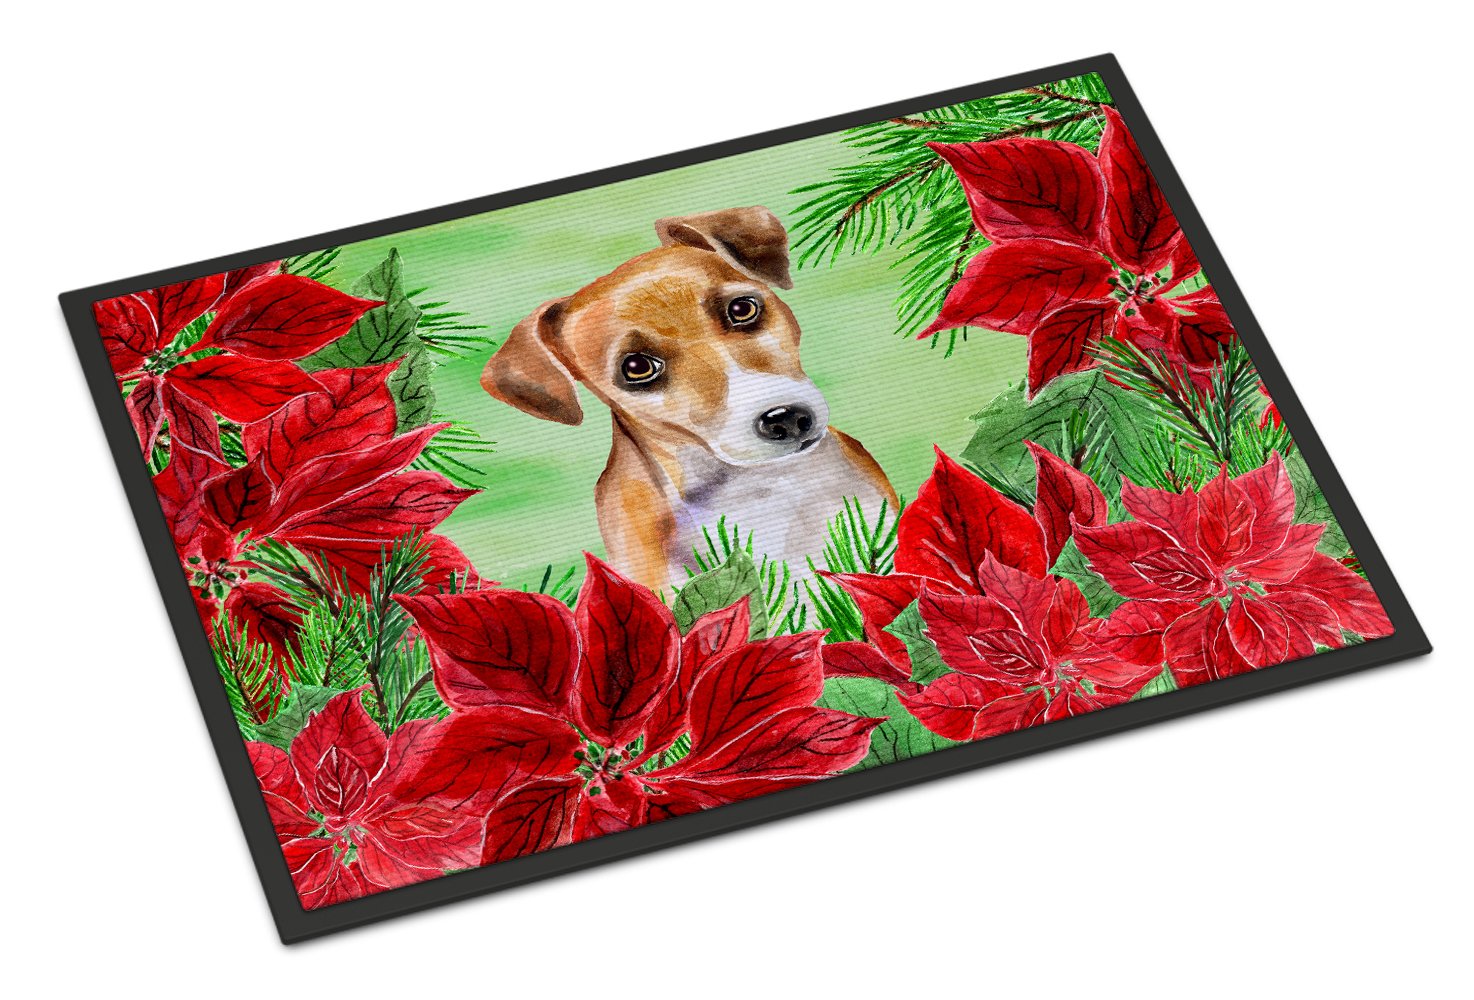 Jack Russell Terrier #2 Poinsettas Indoor or Outdoor Mat 24x36 CK1360JMAT by Caroline's Treasures